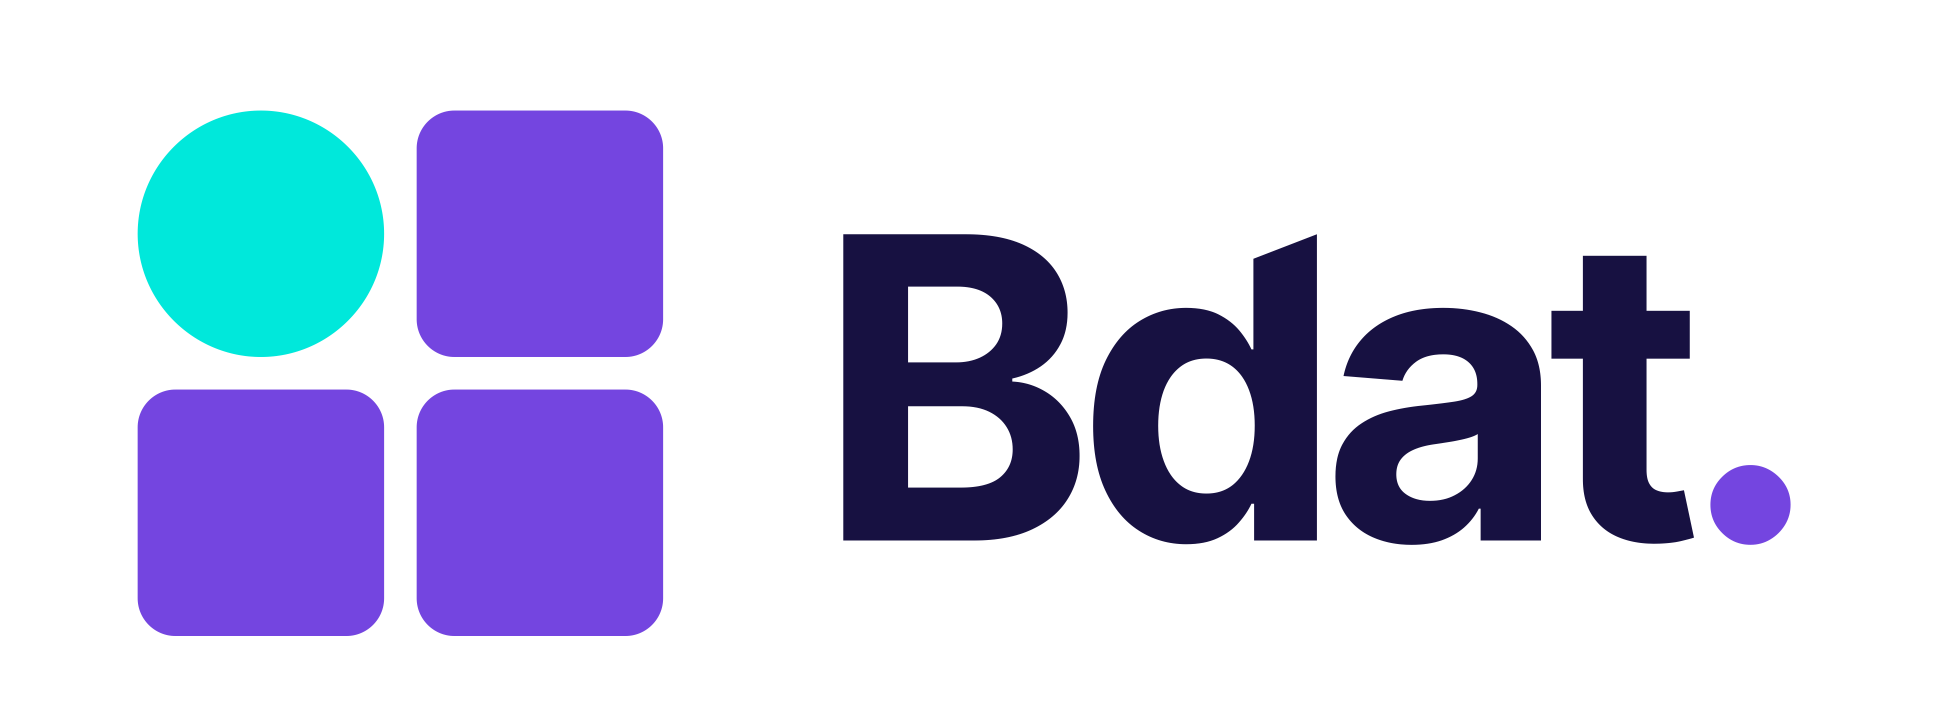 Bdat Logo Szines